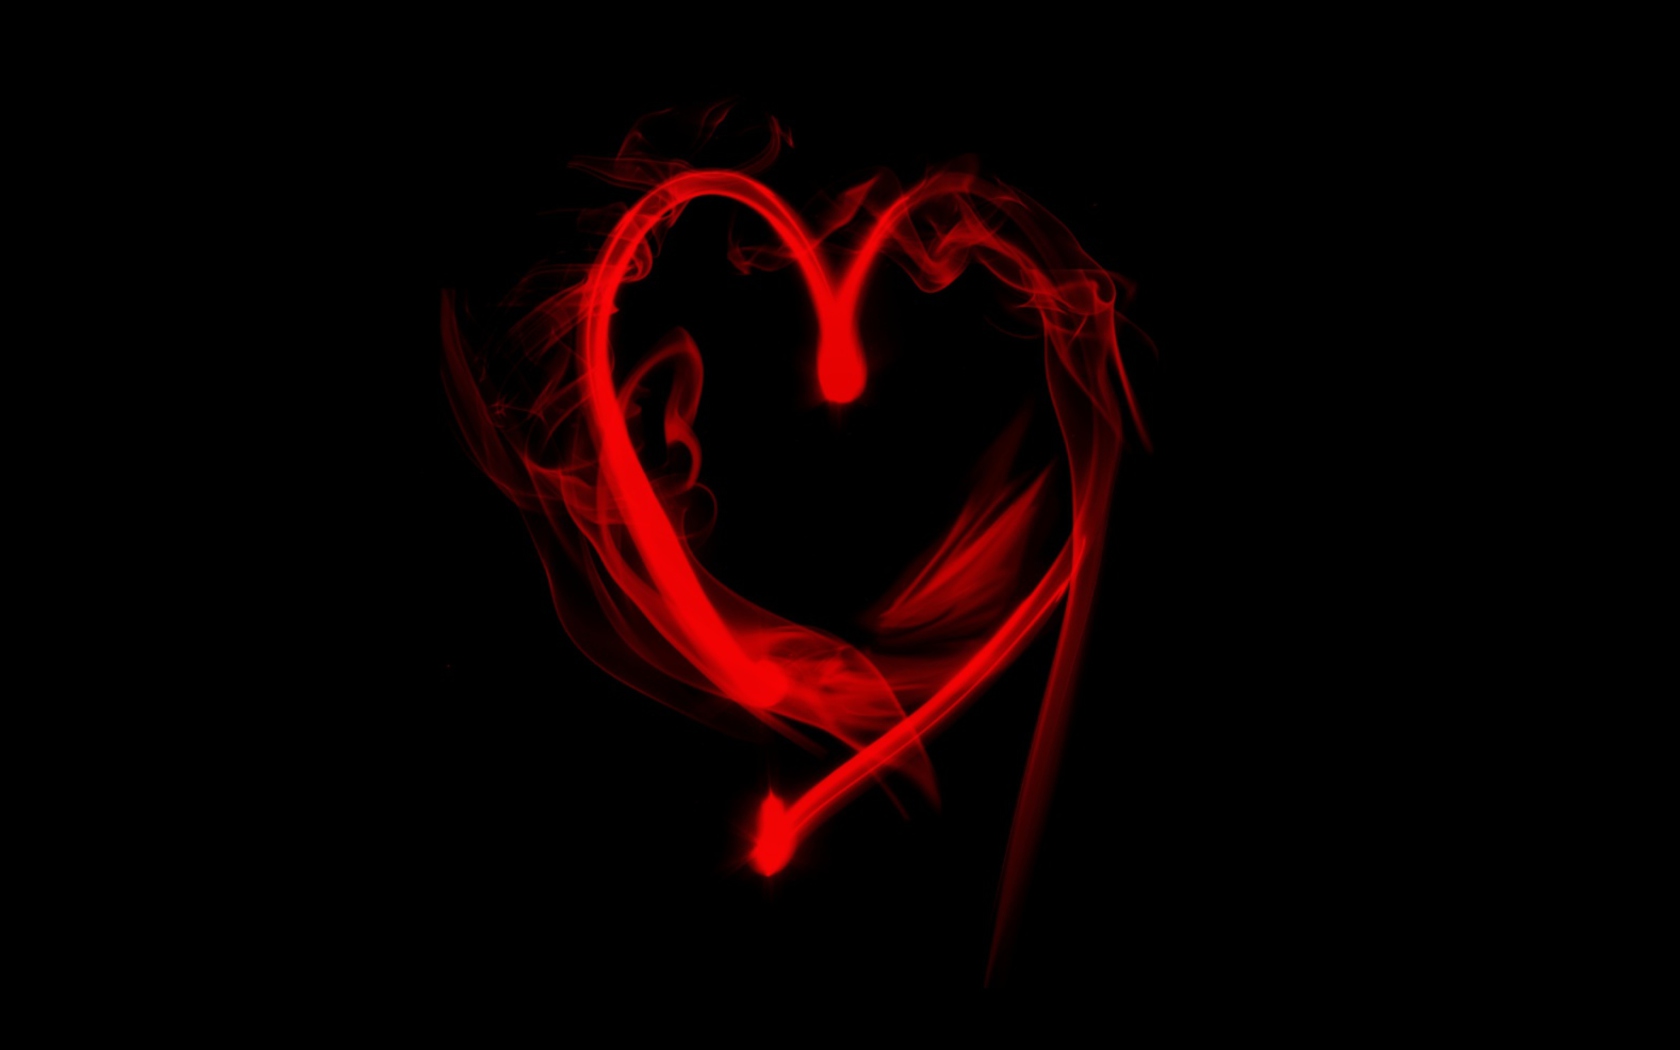 Das Flaming Heart Wallpaper 1680x1050